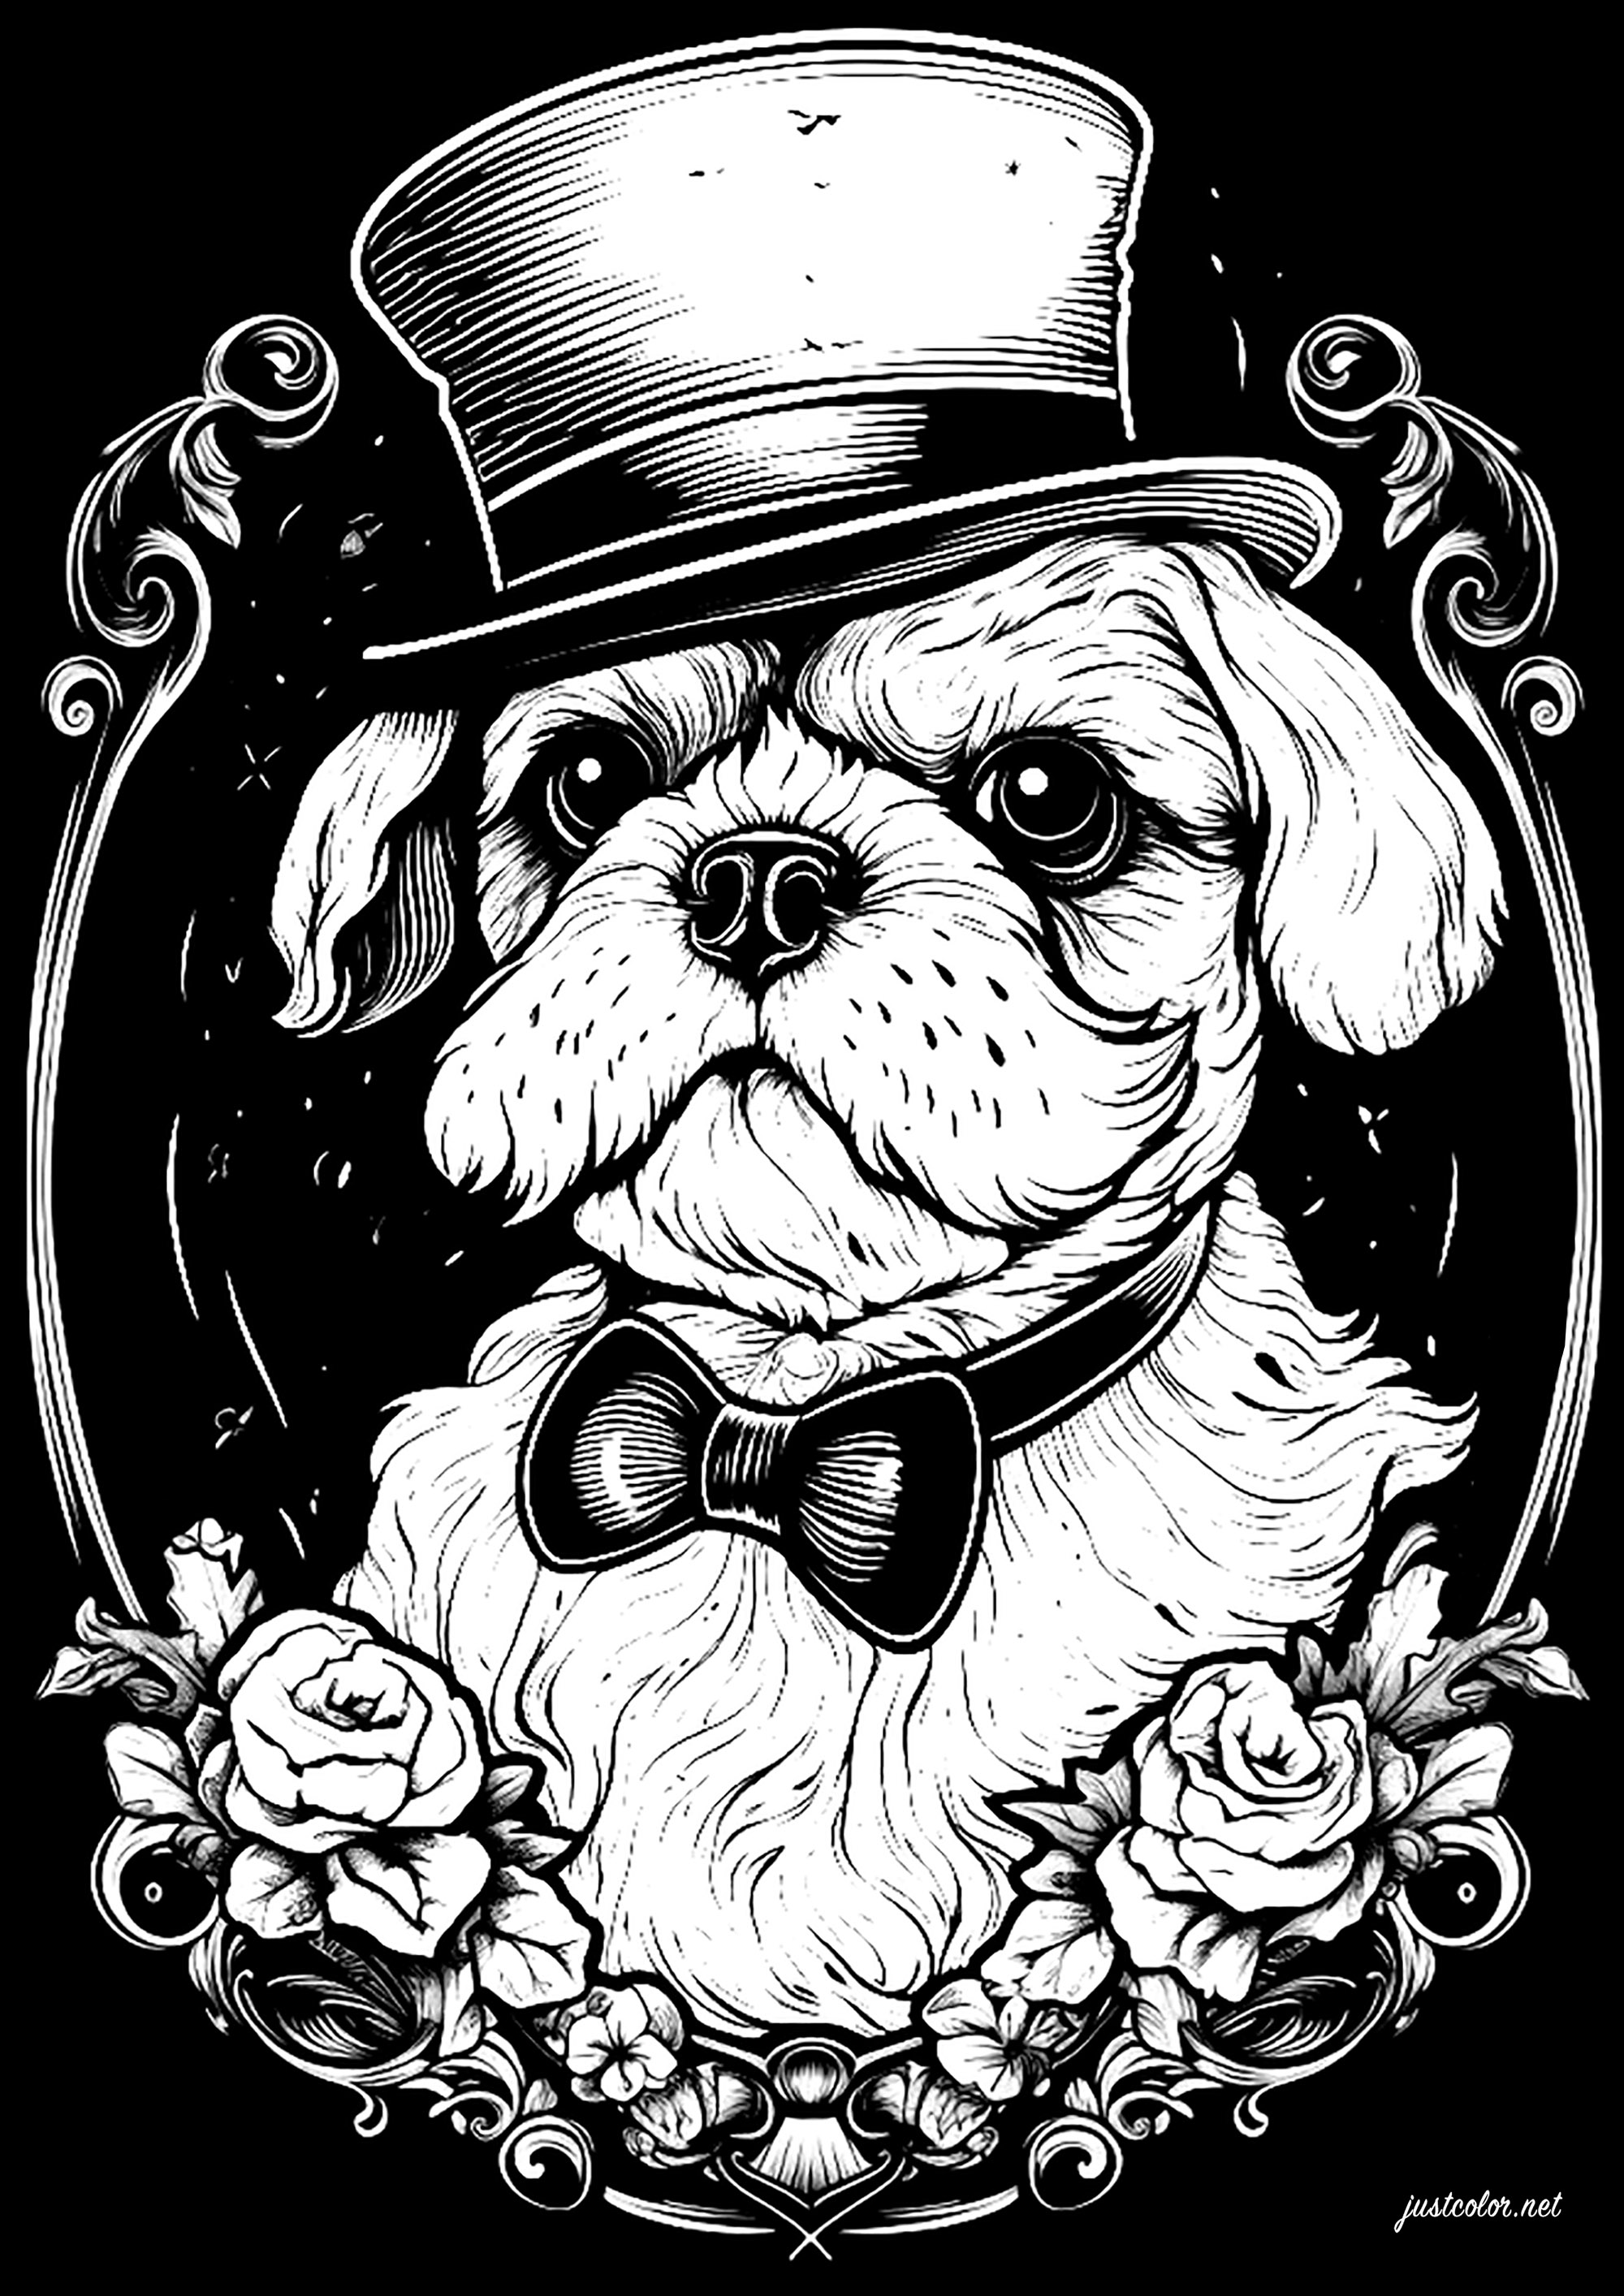 Hund mit Hut. Ausmalen auf schwarzem Hintergrund, im eleganten Retro-Stil